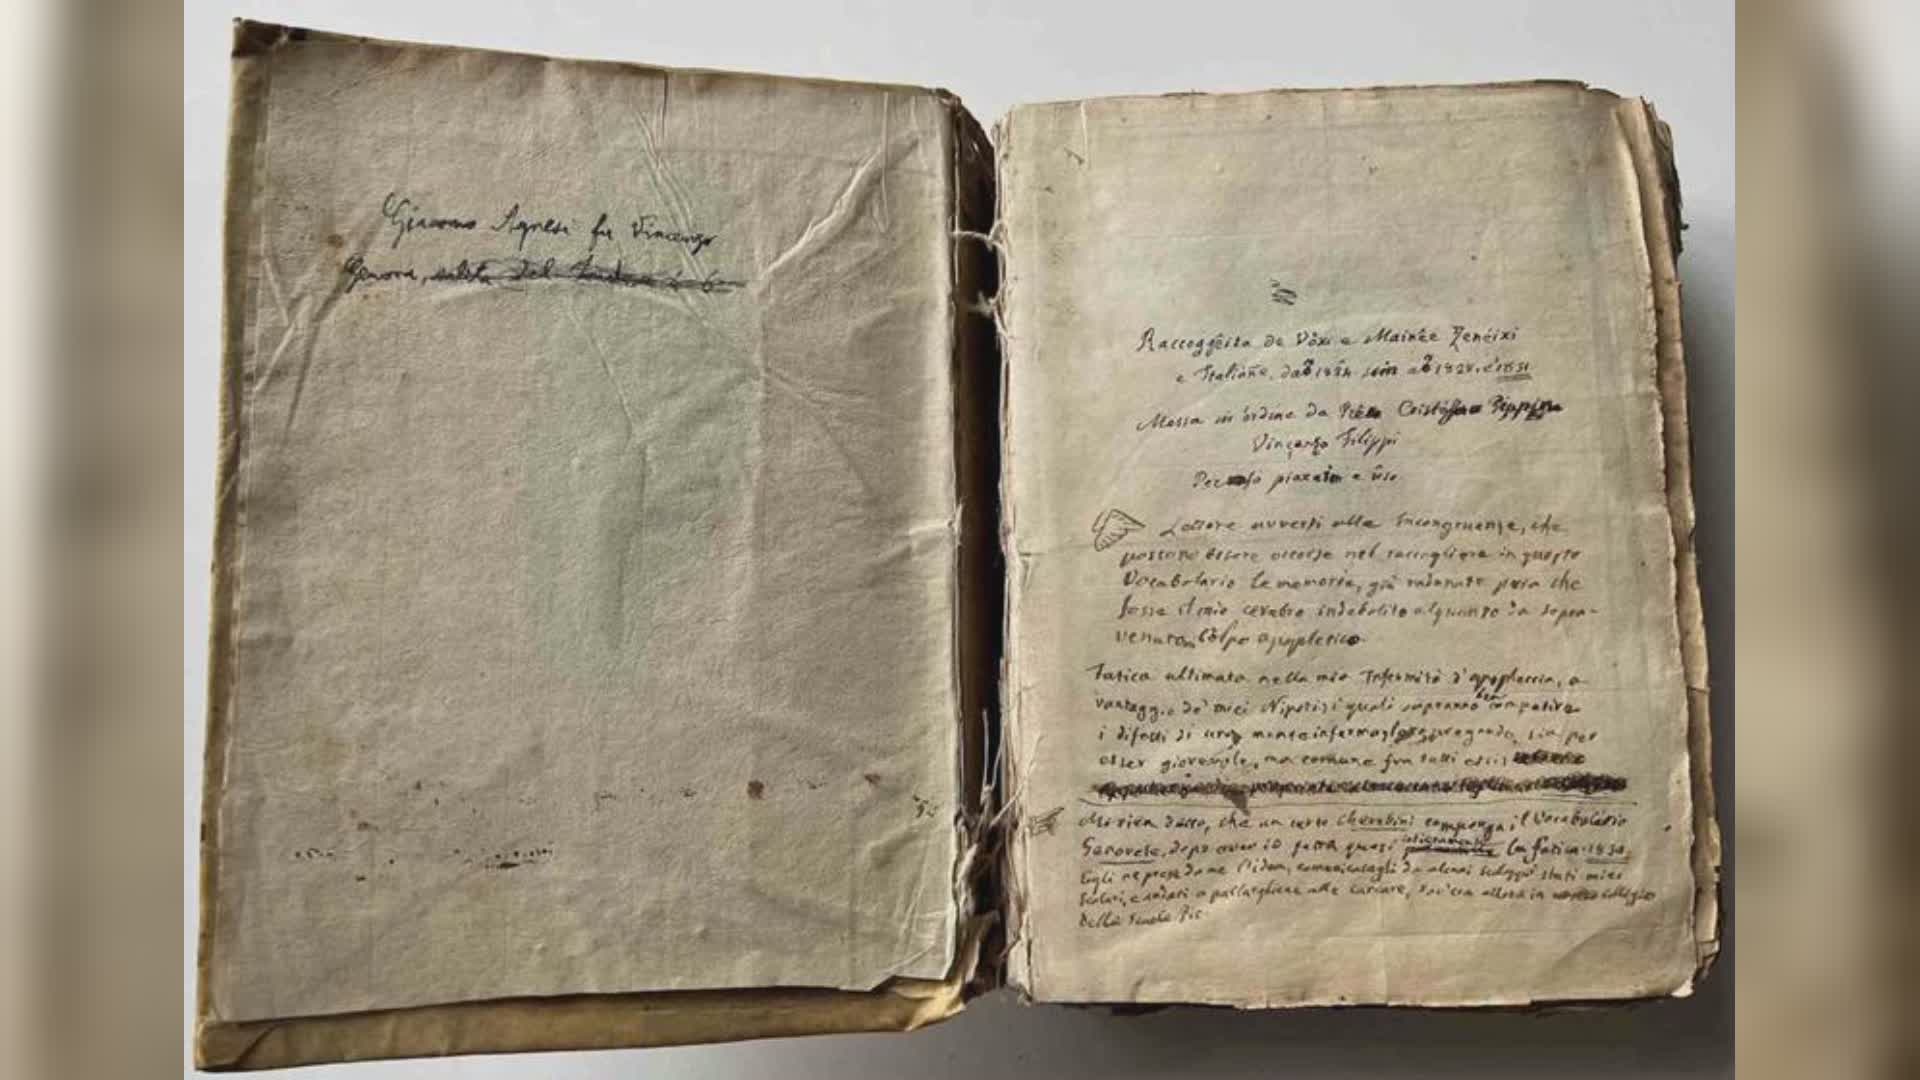 Genova, 'A Compagna' e il primo grande dizionario genovese: martedì 5 dicembre la lezione di Vittorio Laura e Franco Bampi